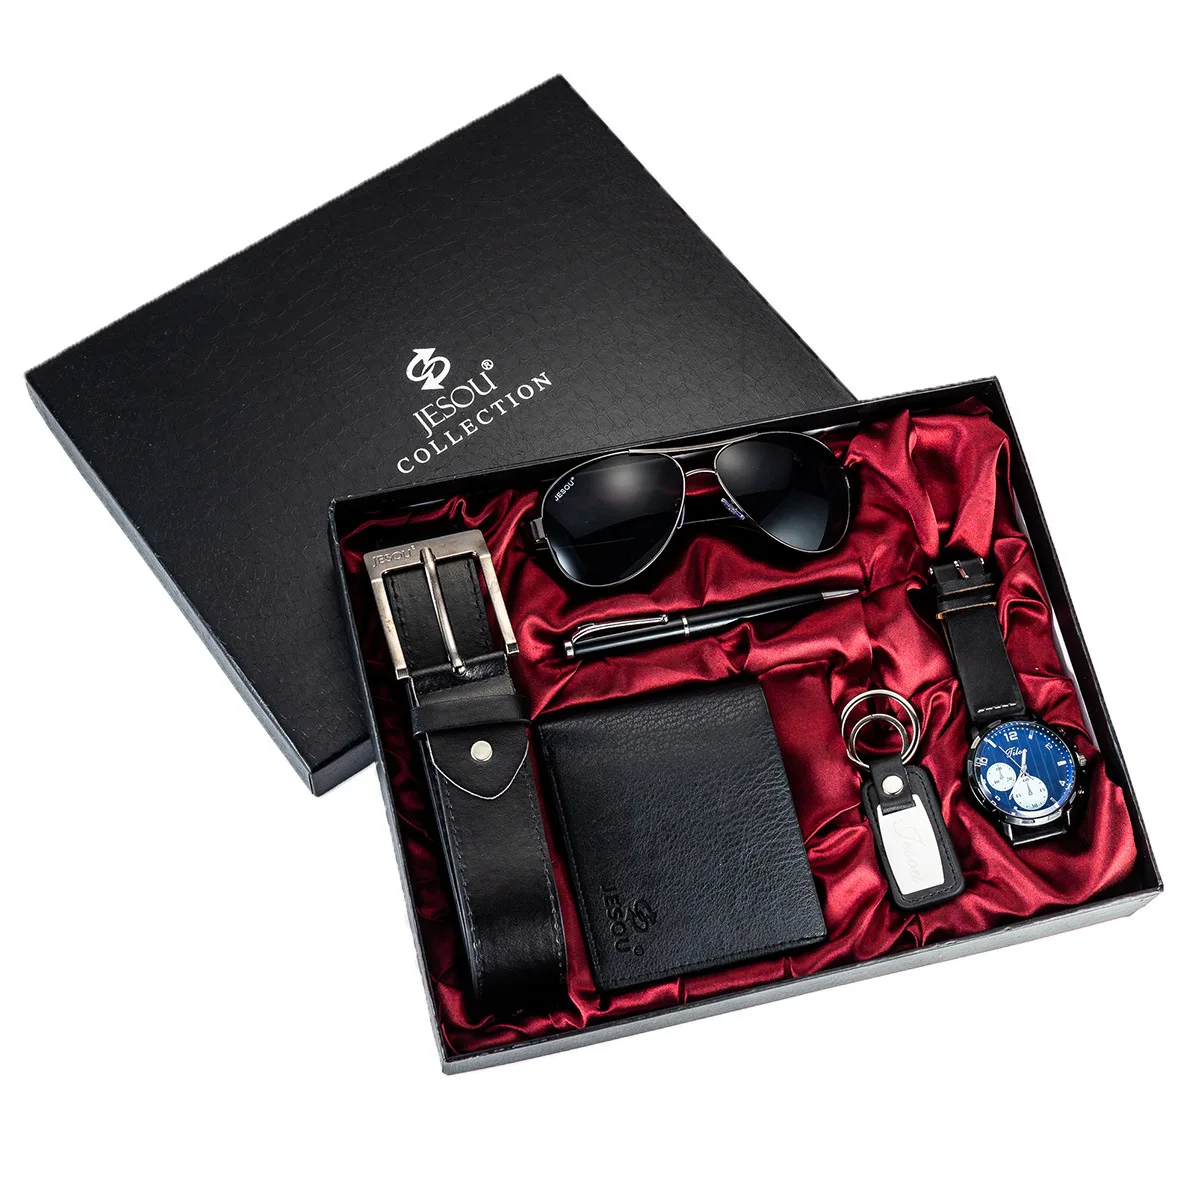 Vertrek naar benzine Heer Business Gift Set 6 Pcs/set Man Watch Belt Wallet Sunglasses And Keychain -  Buy Gift Set,Business Gift Set,Classical Gift Set Product on Alibaba.com